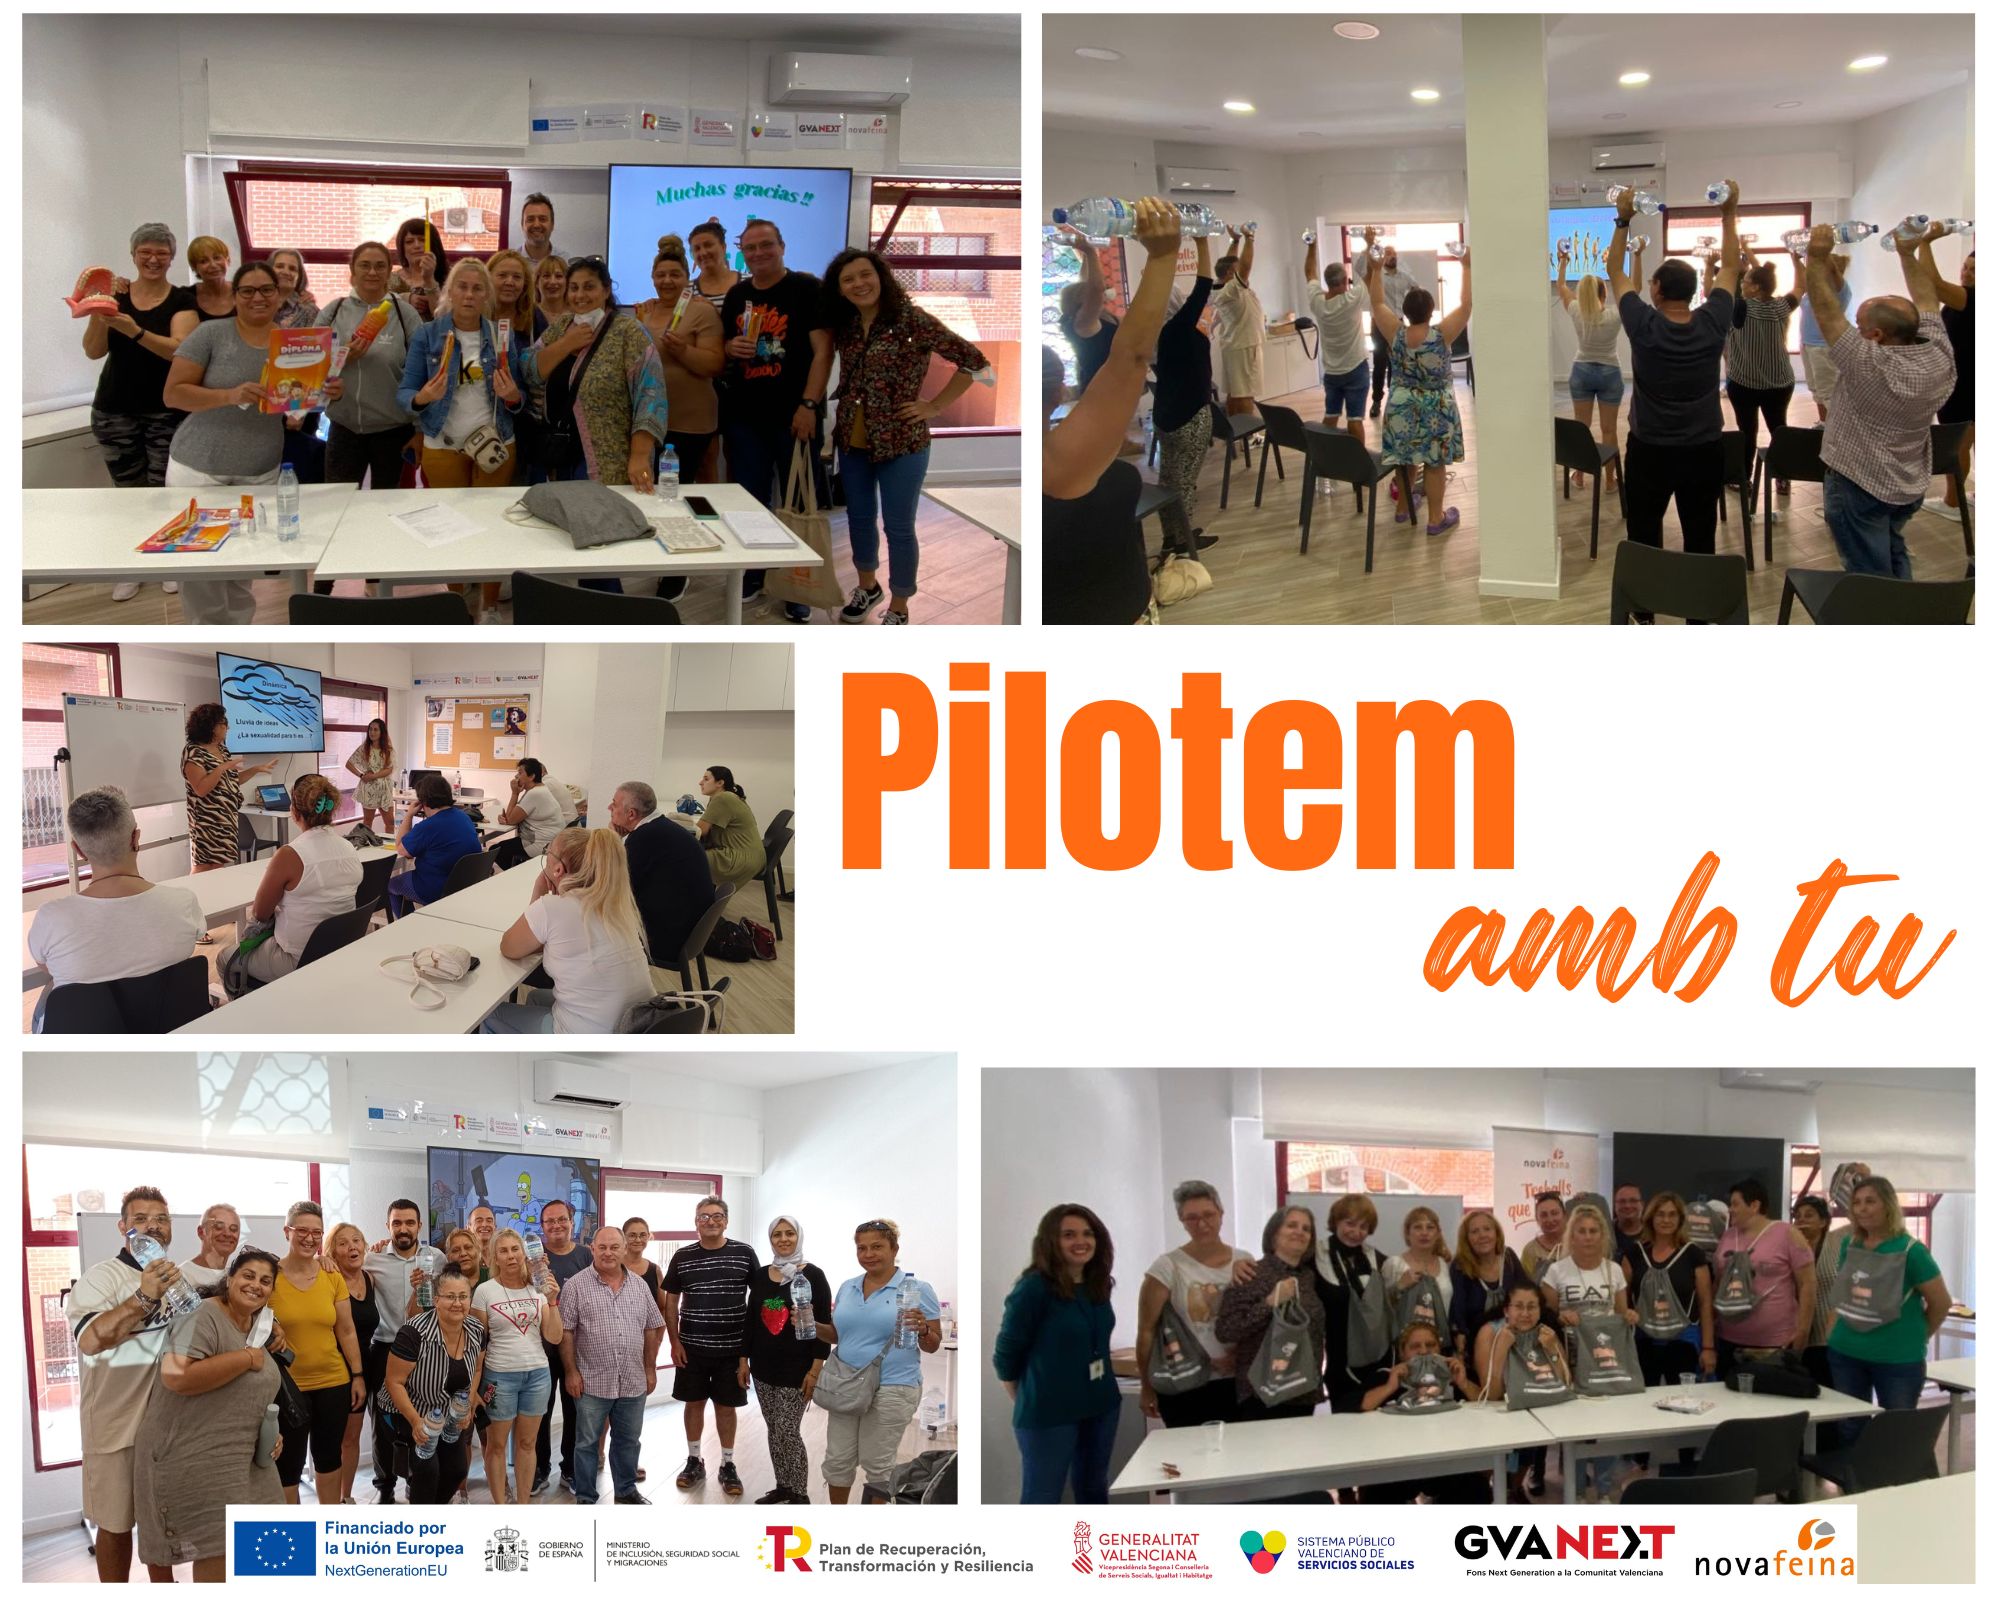 Ir a Programa Pilotem transforma vidas a través de la promoción de la salud en Alicante